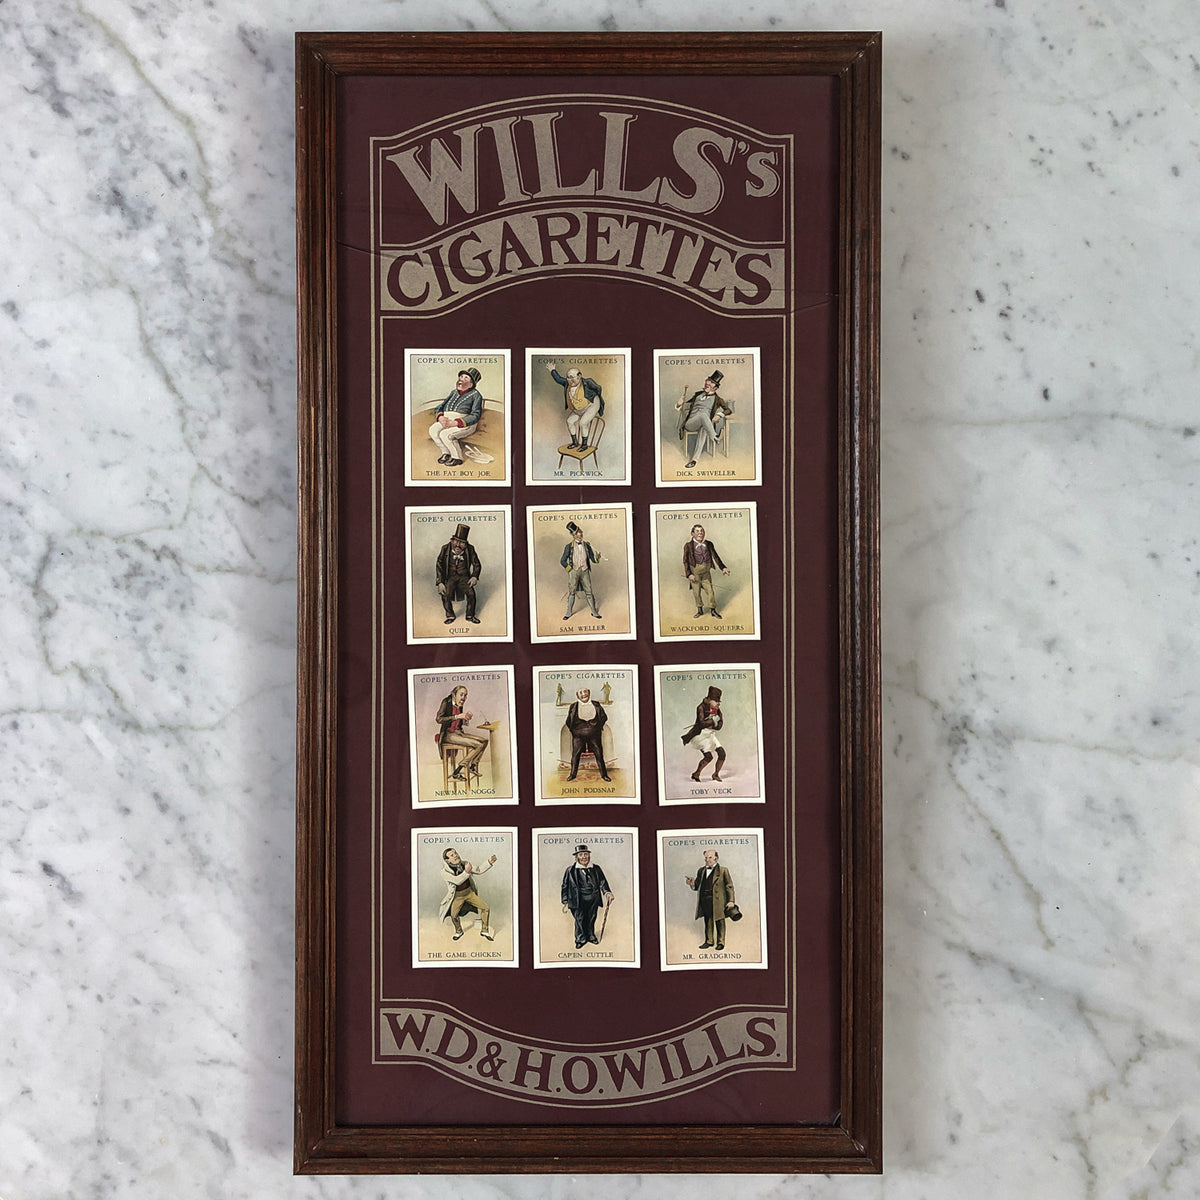 Antique Wills&#39;s British Cigarettes Art Circa 1900